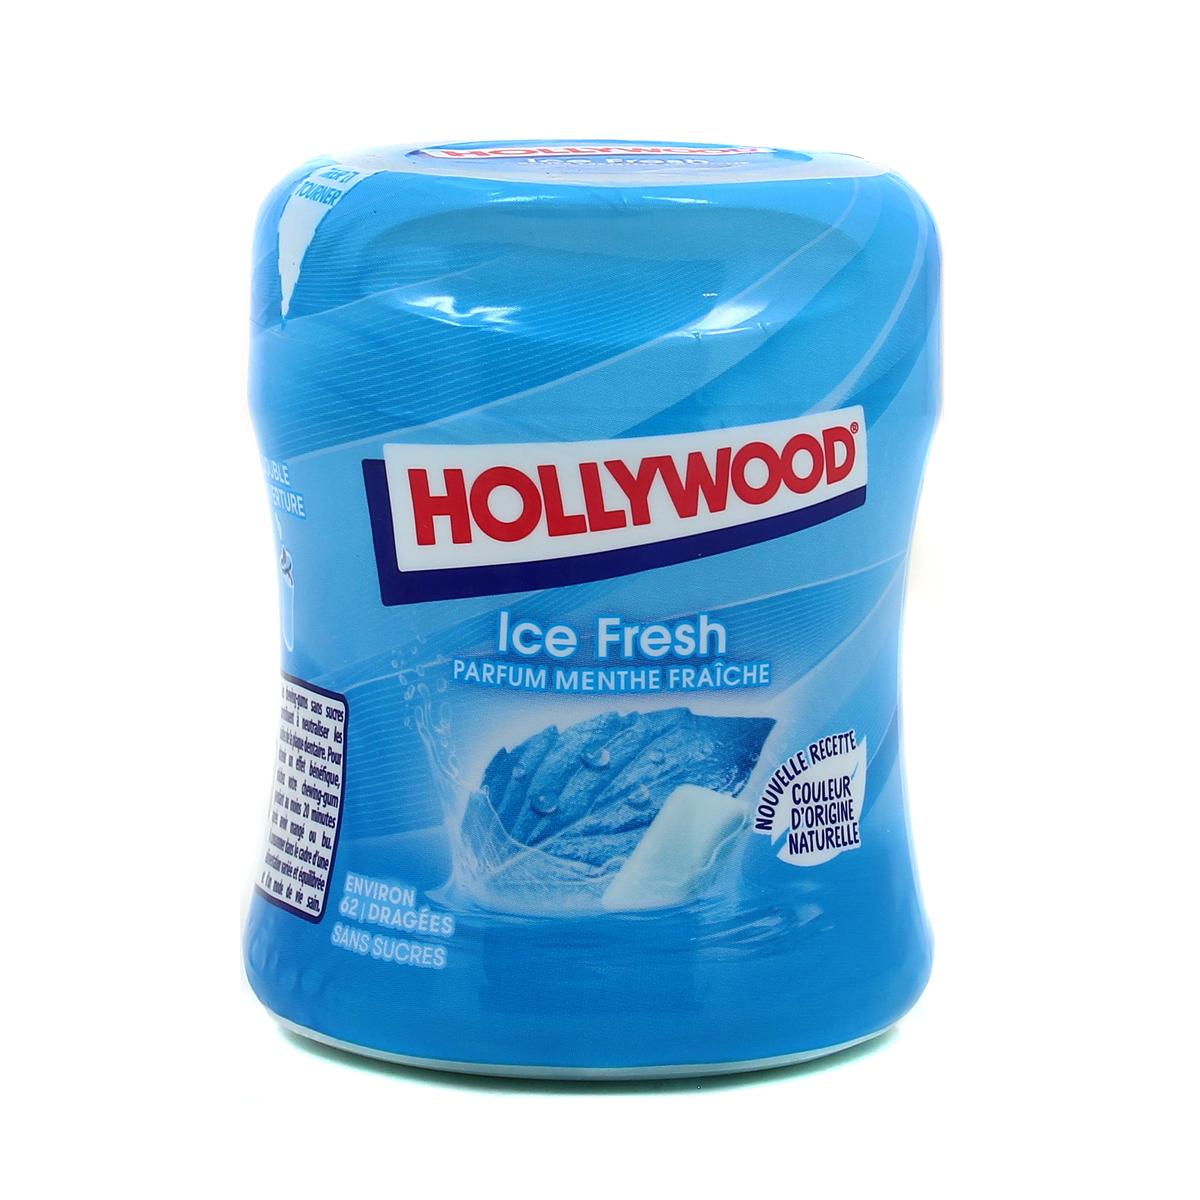 Achat Hollywood Chewing-gum à la menthe fraîche sans sucres ice fresh